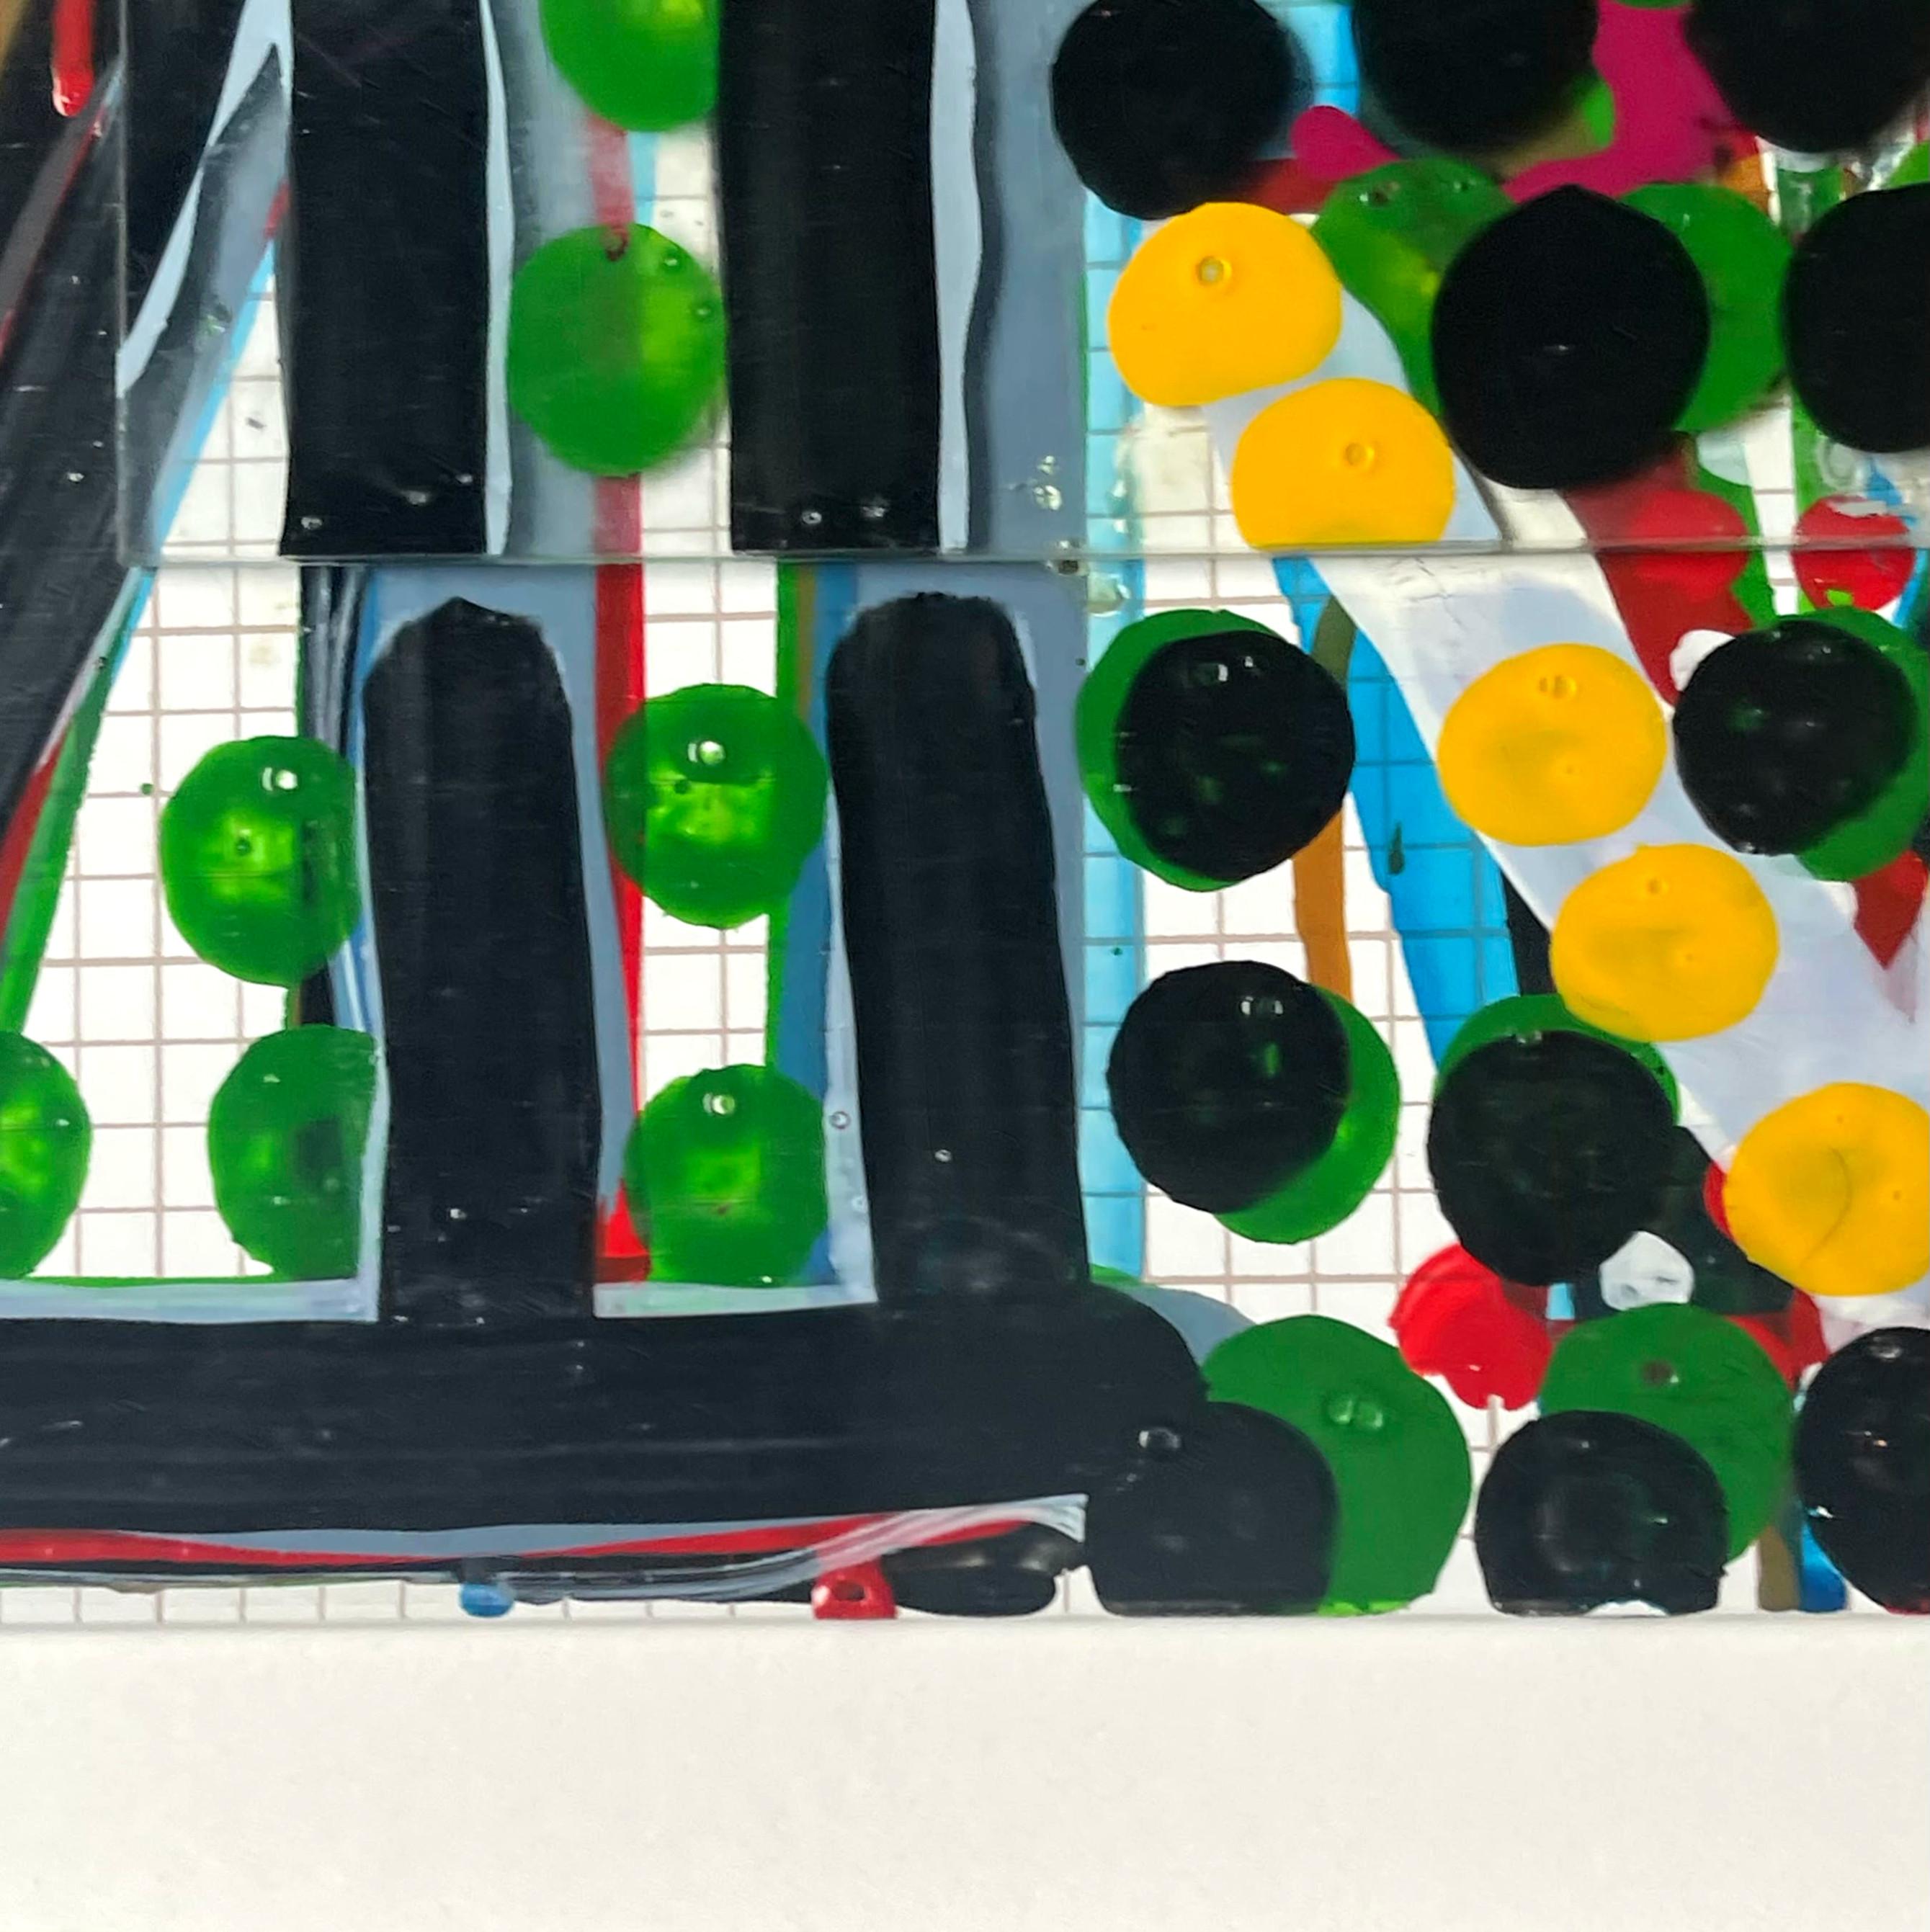 Jennifer Losch Bartlett
#Nr. 7 (Glashäuser), 2000
Gemischte Medien: 3D Sculpted plate glass over silkscreen grid on baked enamel and steel plate, untergebracht in einem Kastenrahmen
Rückseitig signiert 